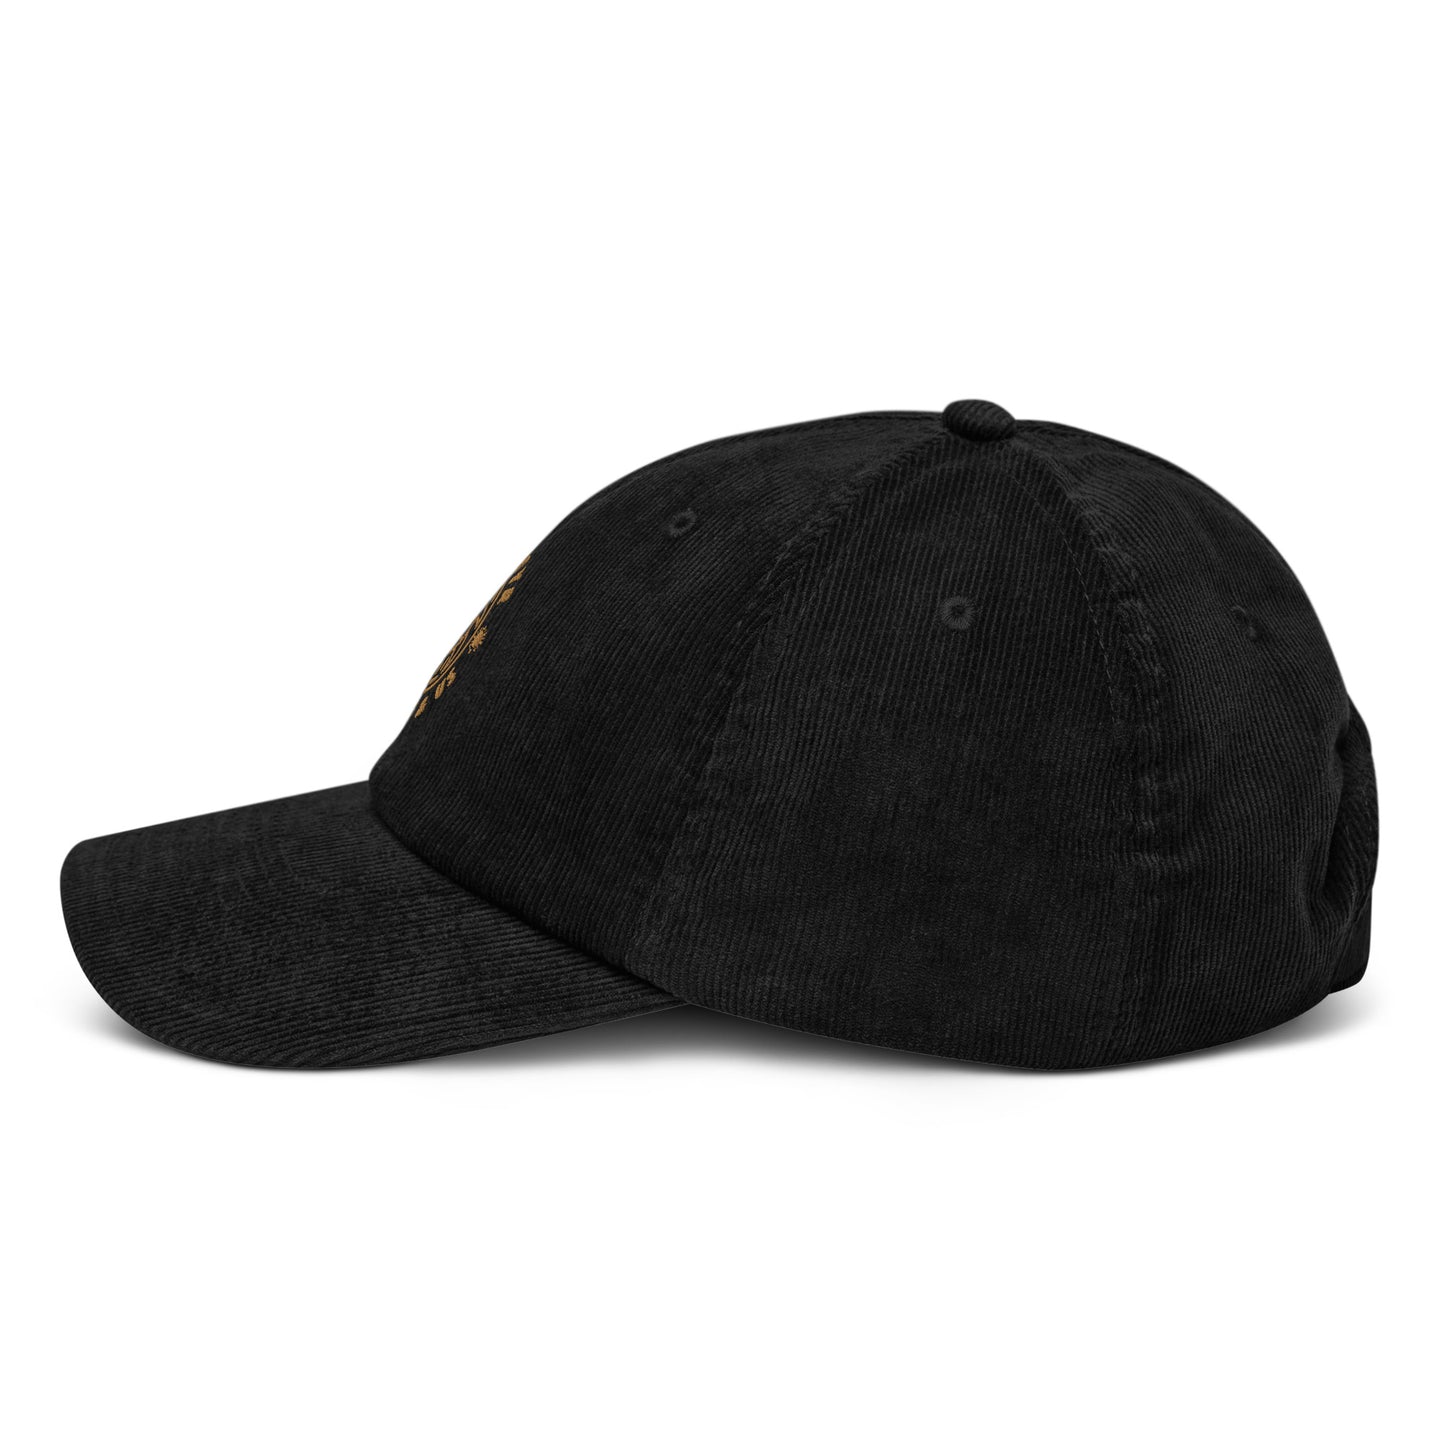 Sea Zephyr corduroy hat - black